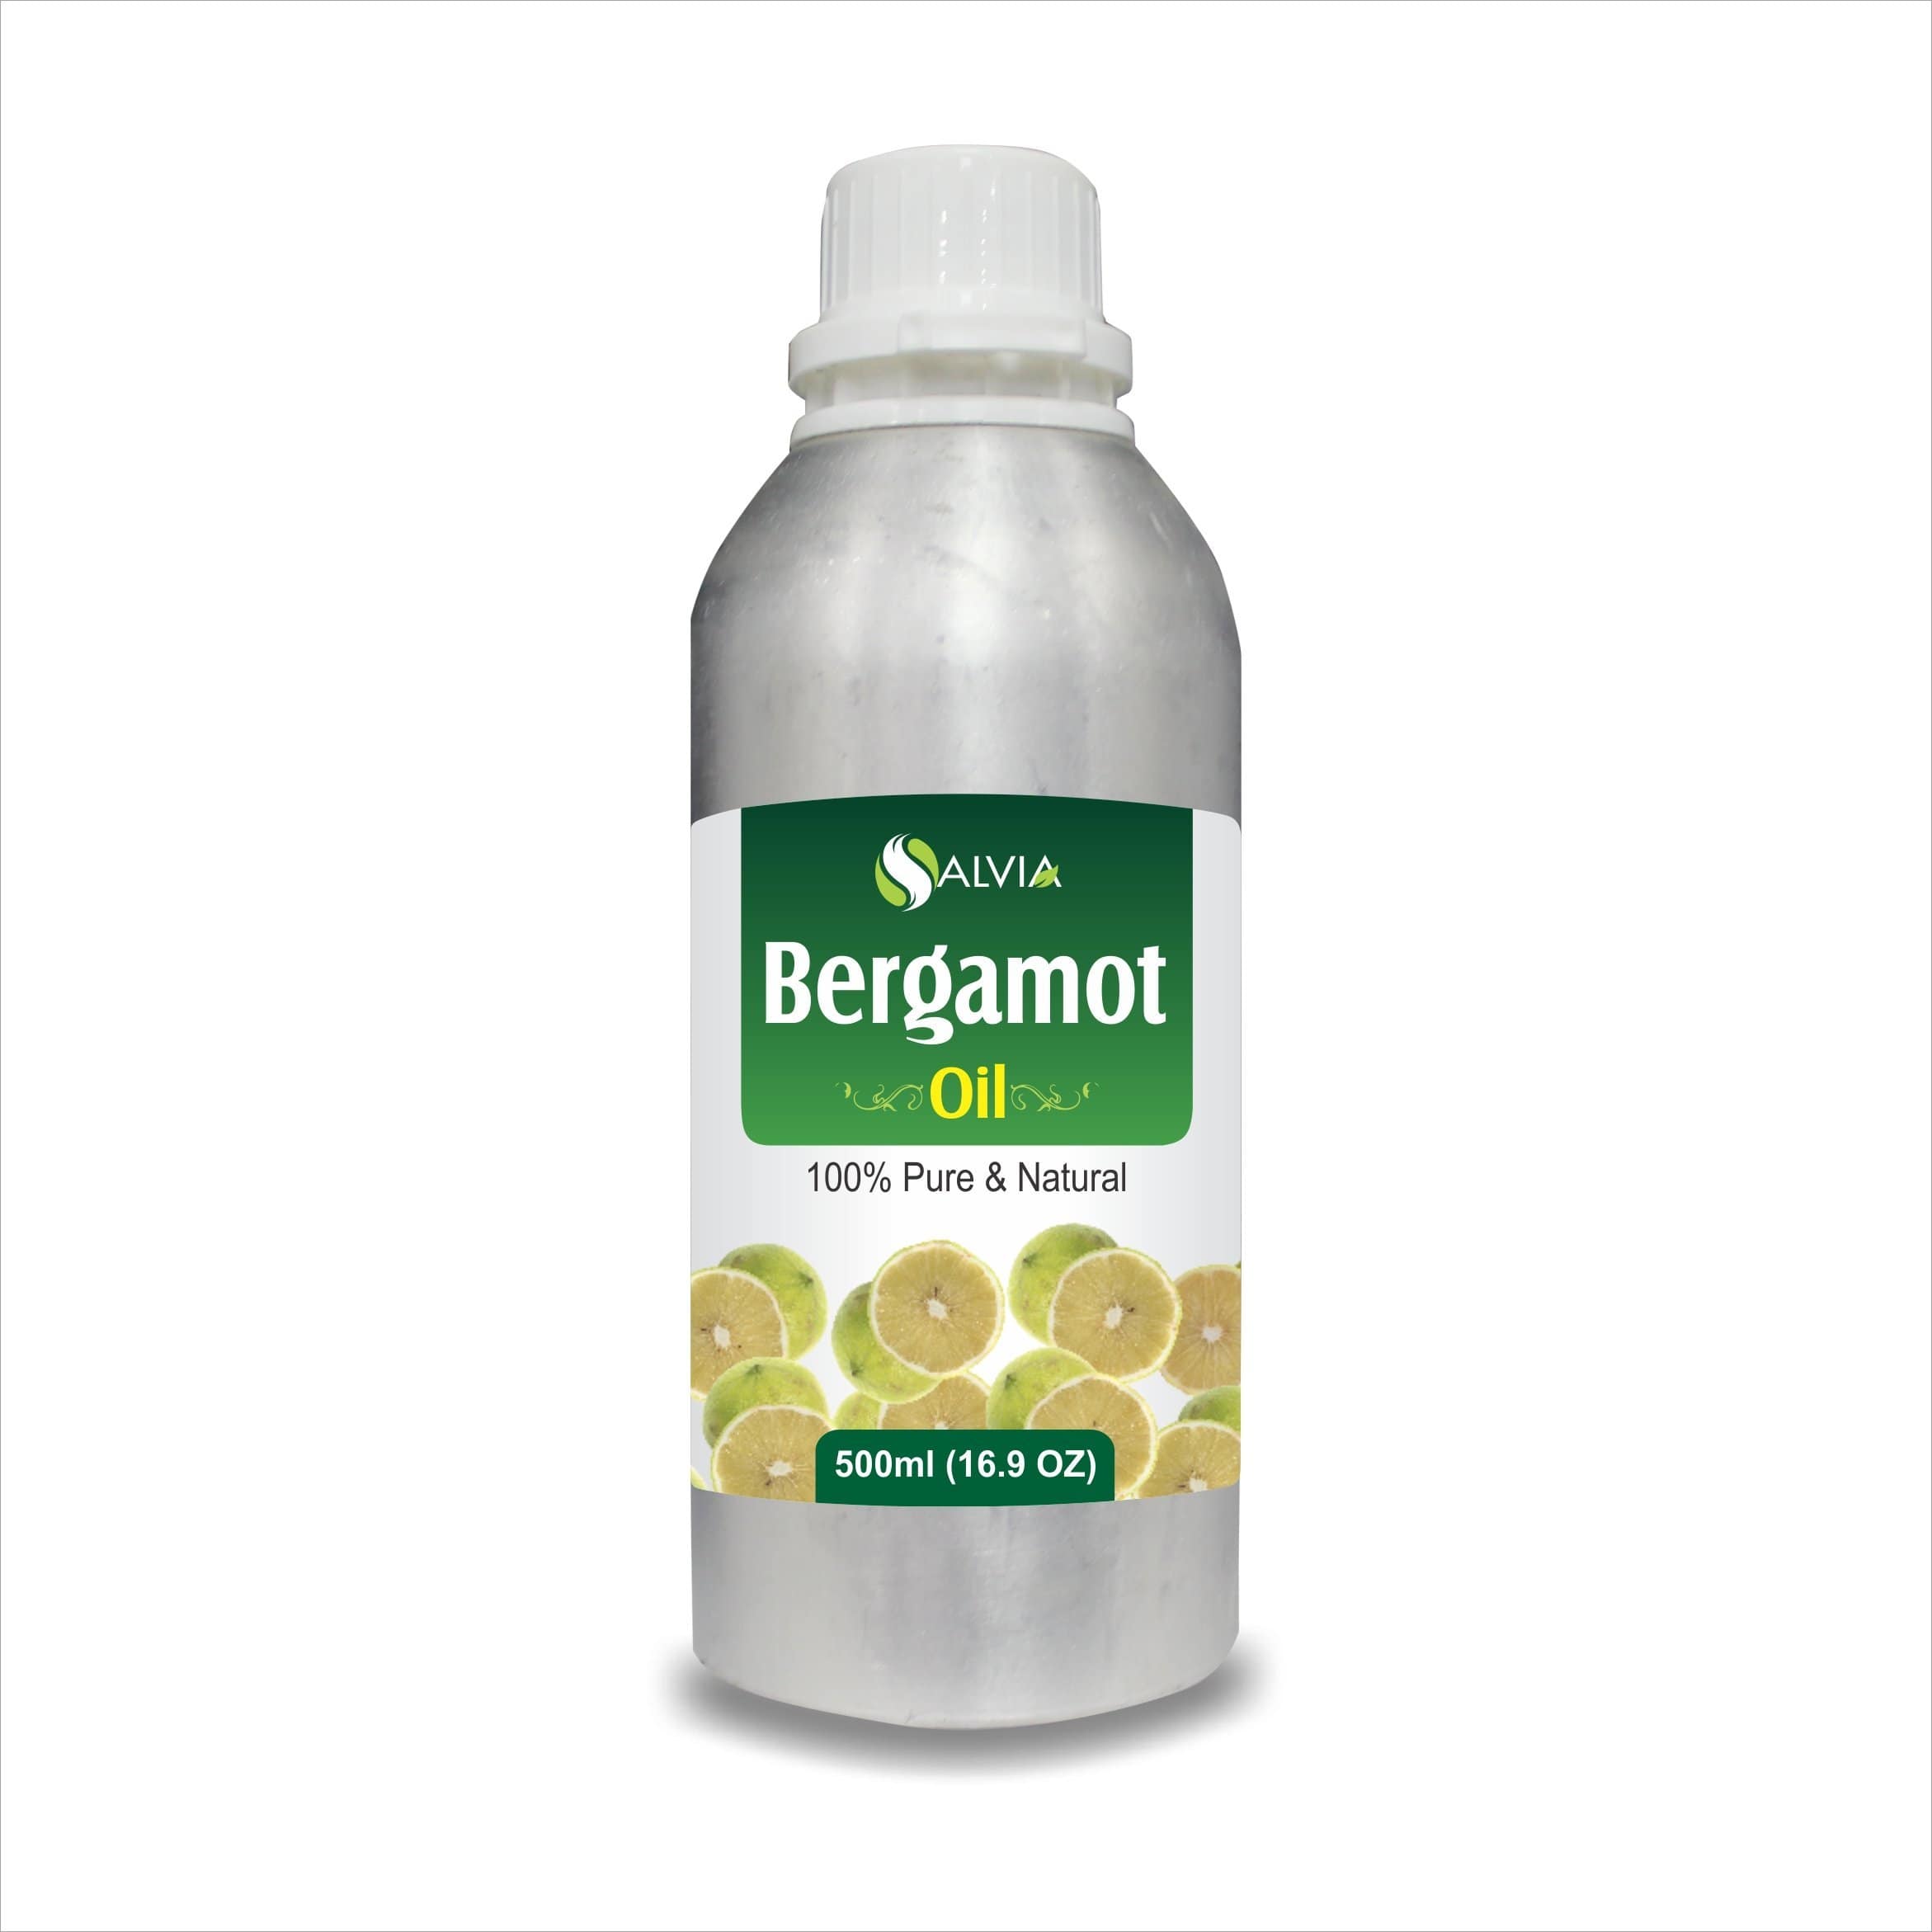 bergamot oil benefits for skin